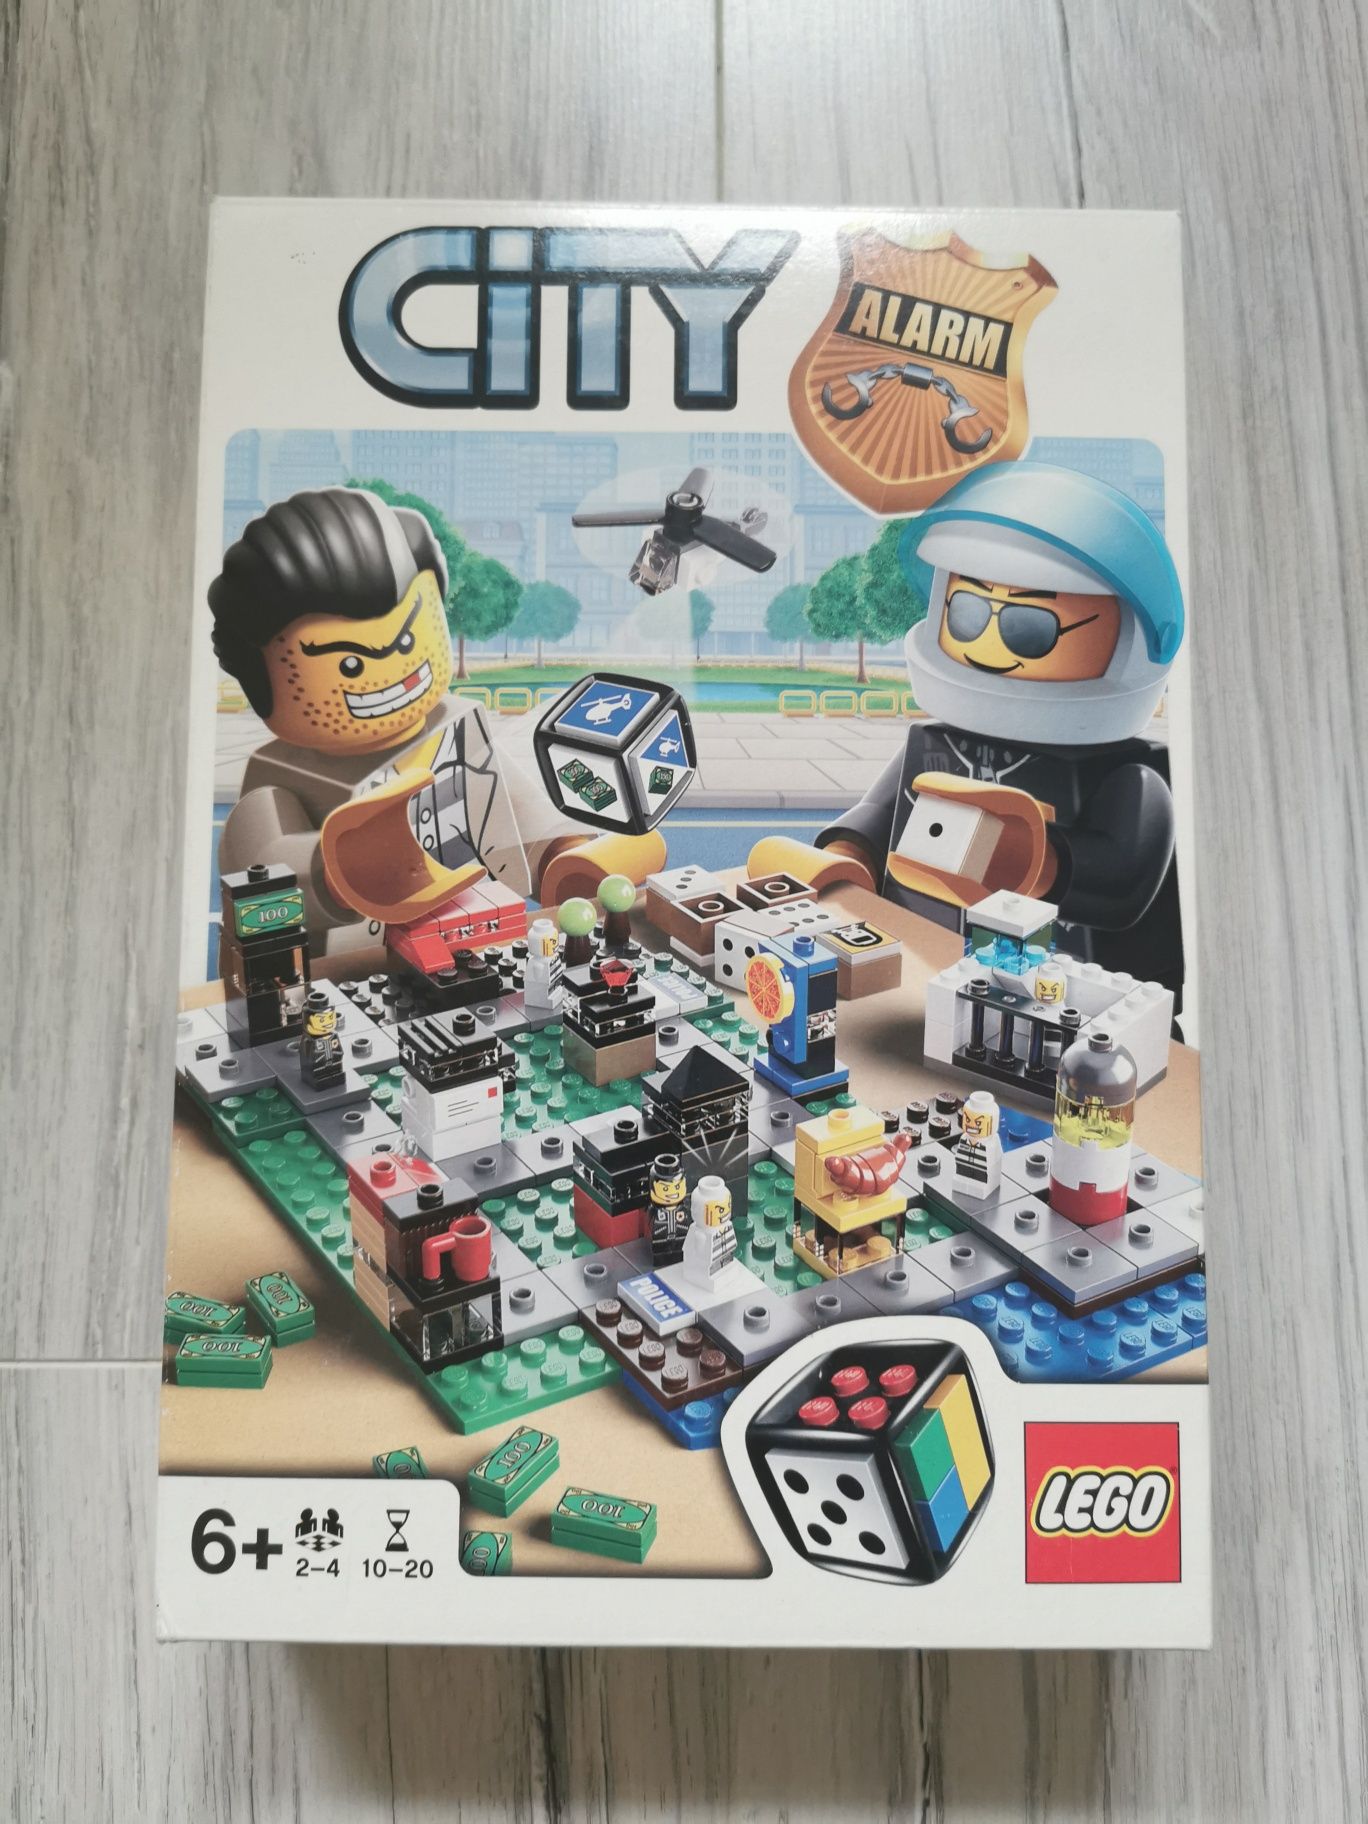 Lego City 3865 Alarm gra planszowa